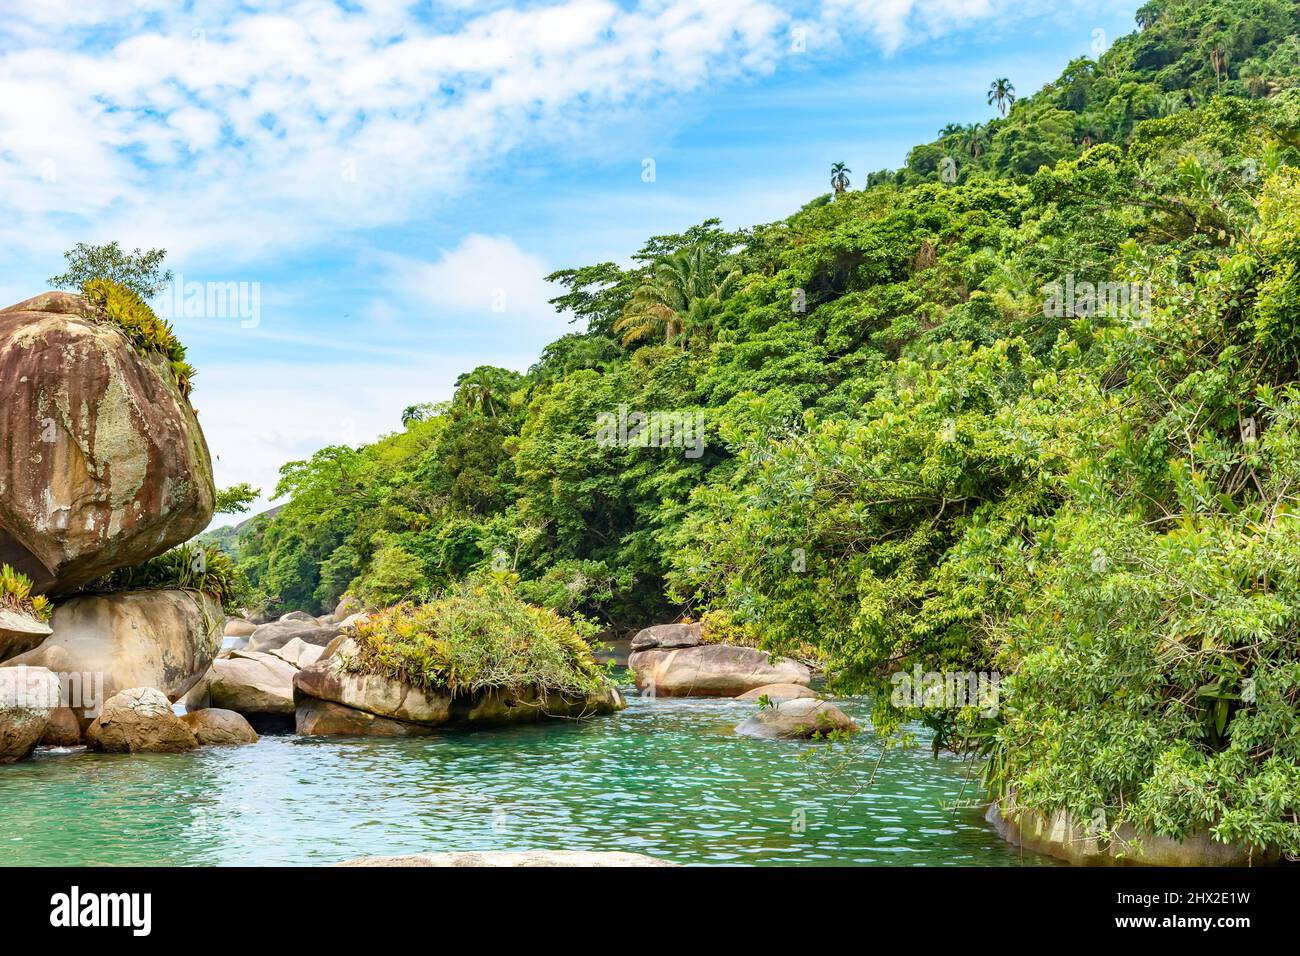 Laguna de agua salada entre las rocas y el bosque tropical conservado en Trindade, en la costa sur del estado de Río de Janeiro. Foto de stock